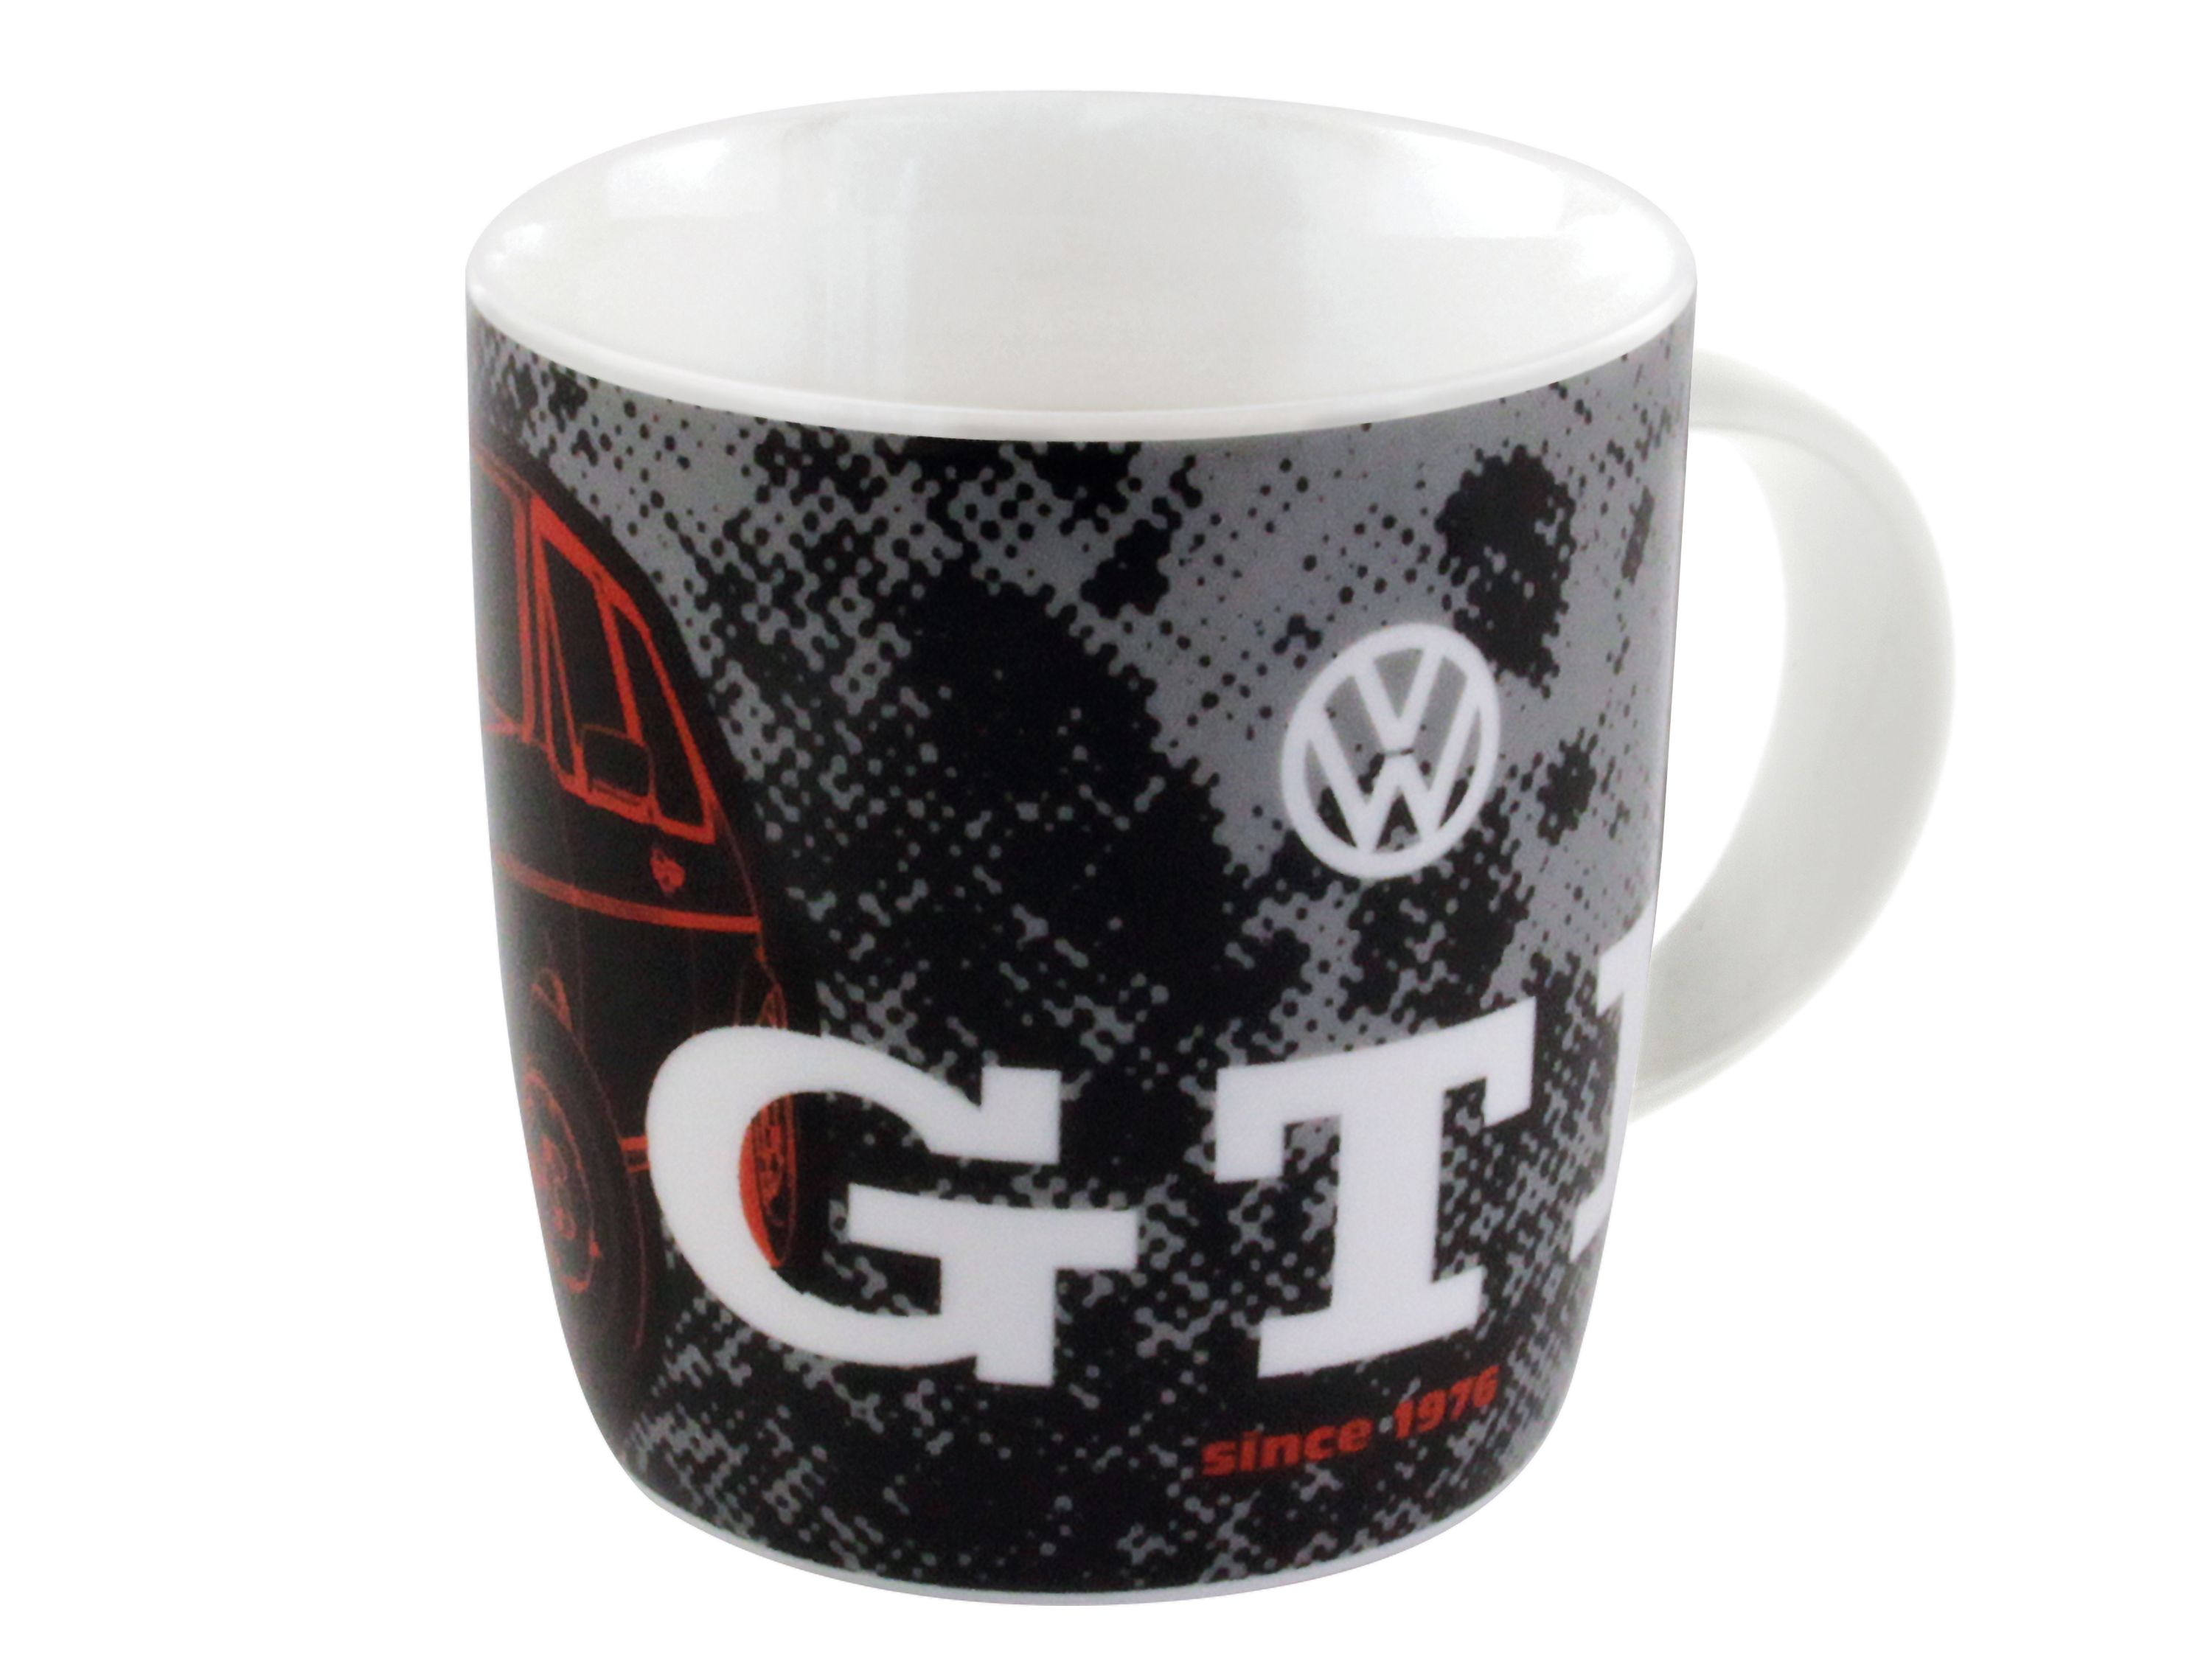 VOLKSWAGEN VW GTI Mug à café 370ml - The Legend/rouge